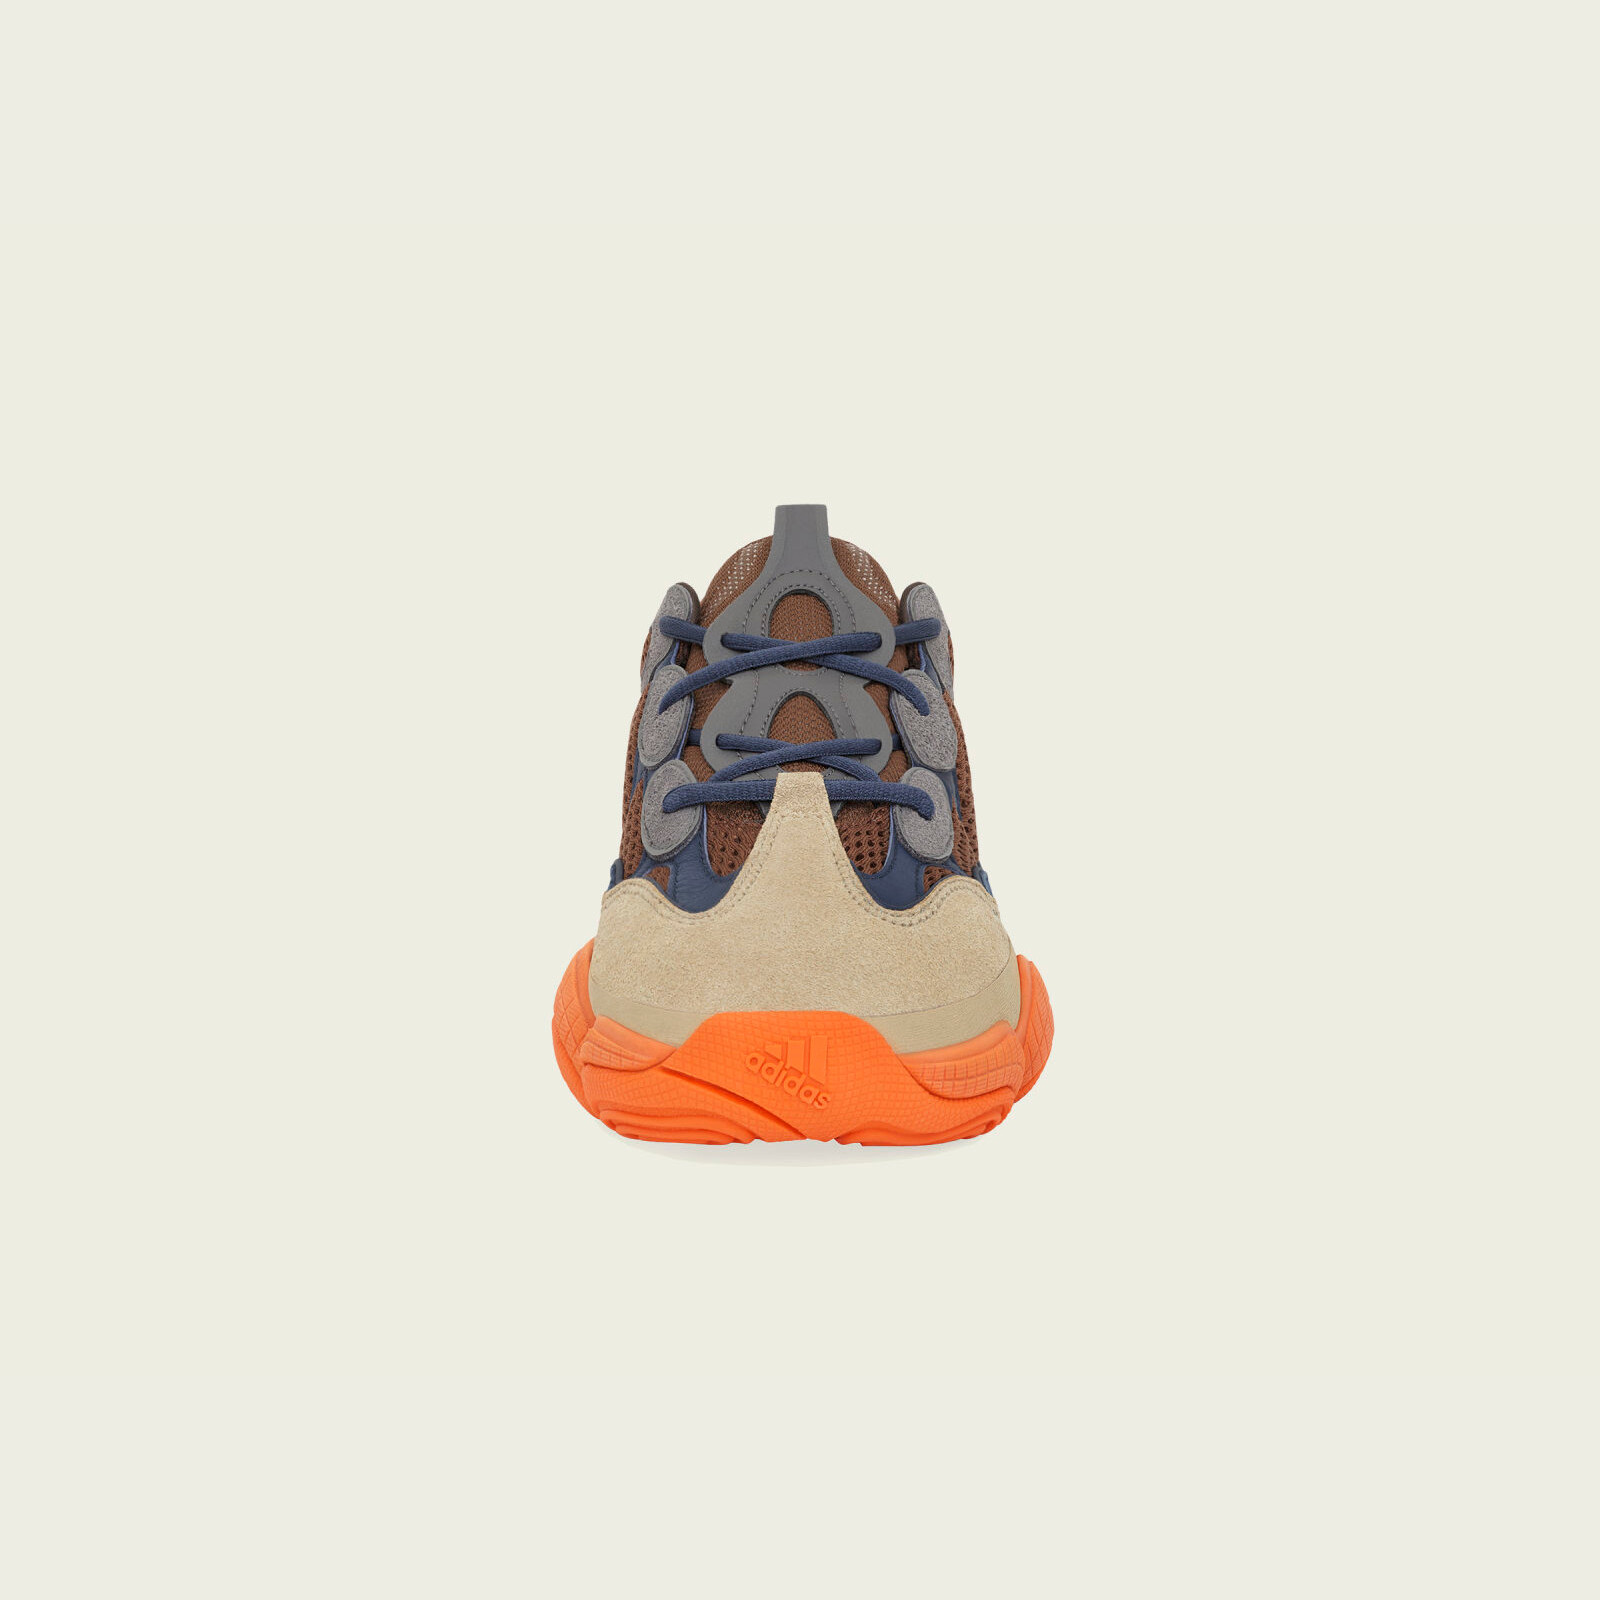 Adidas Yeezy 500
« Enflame »